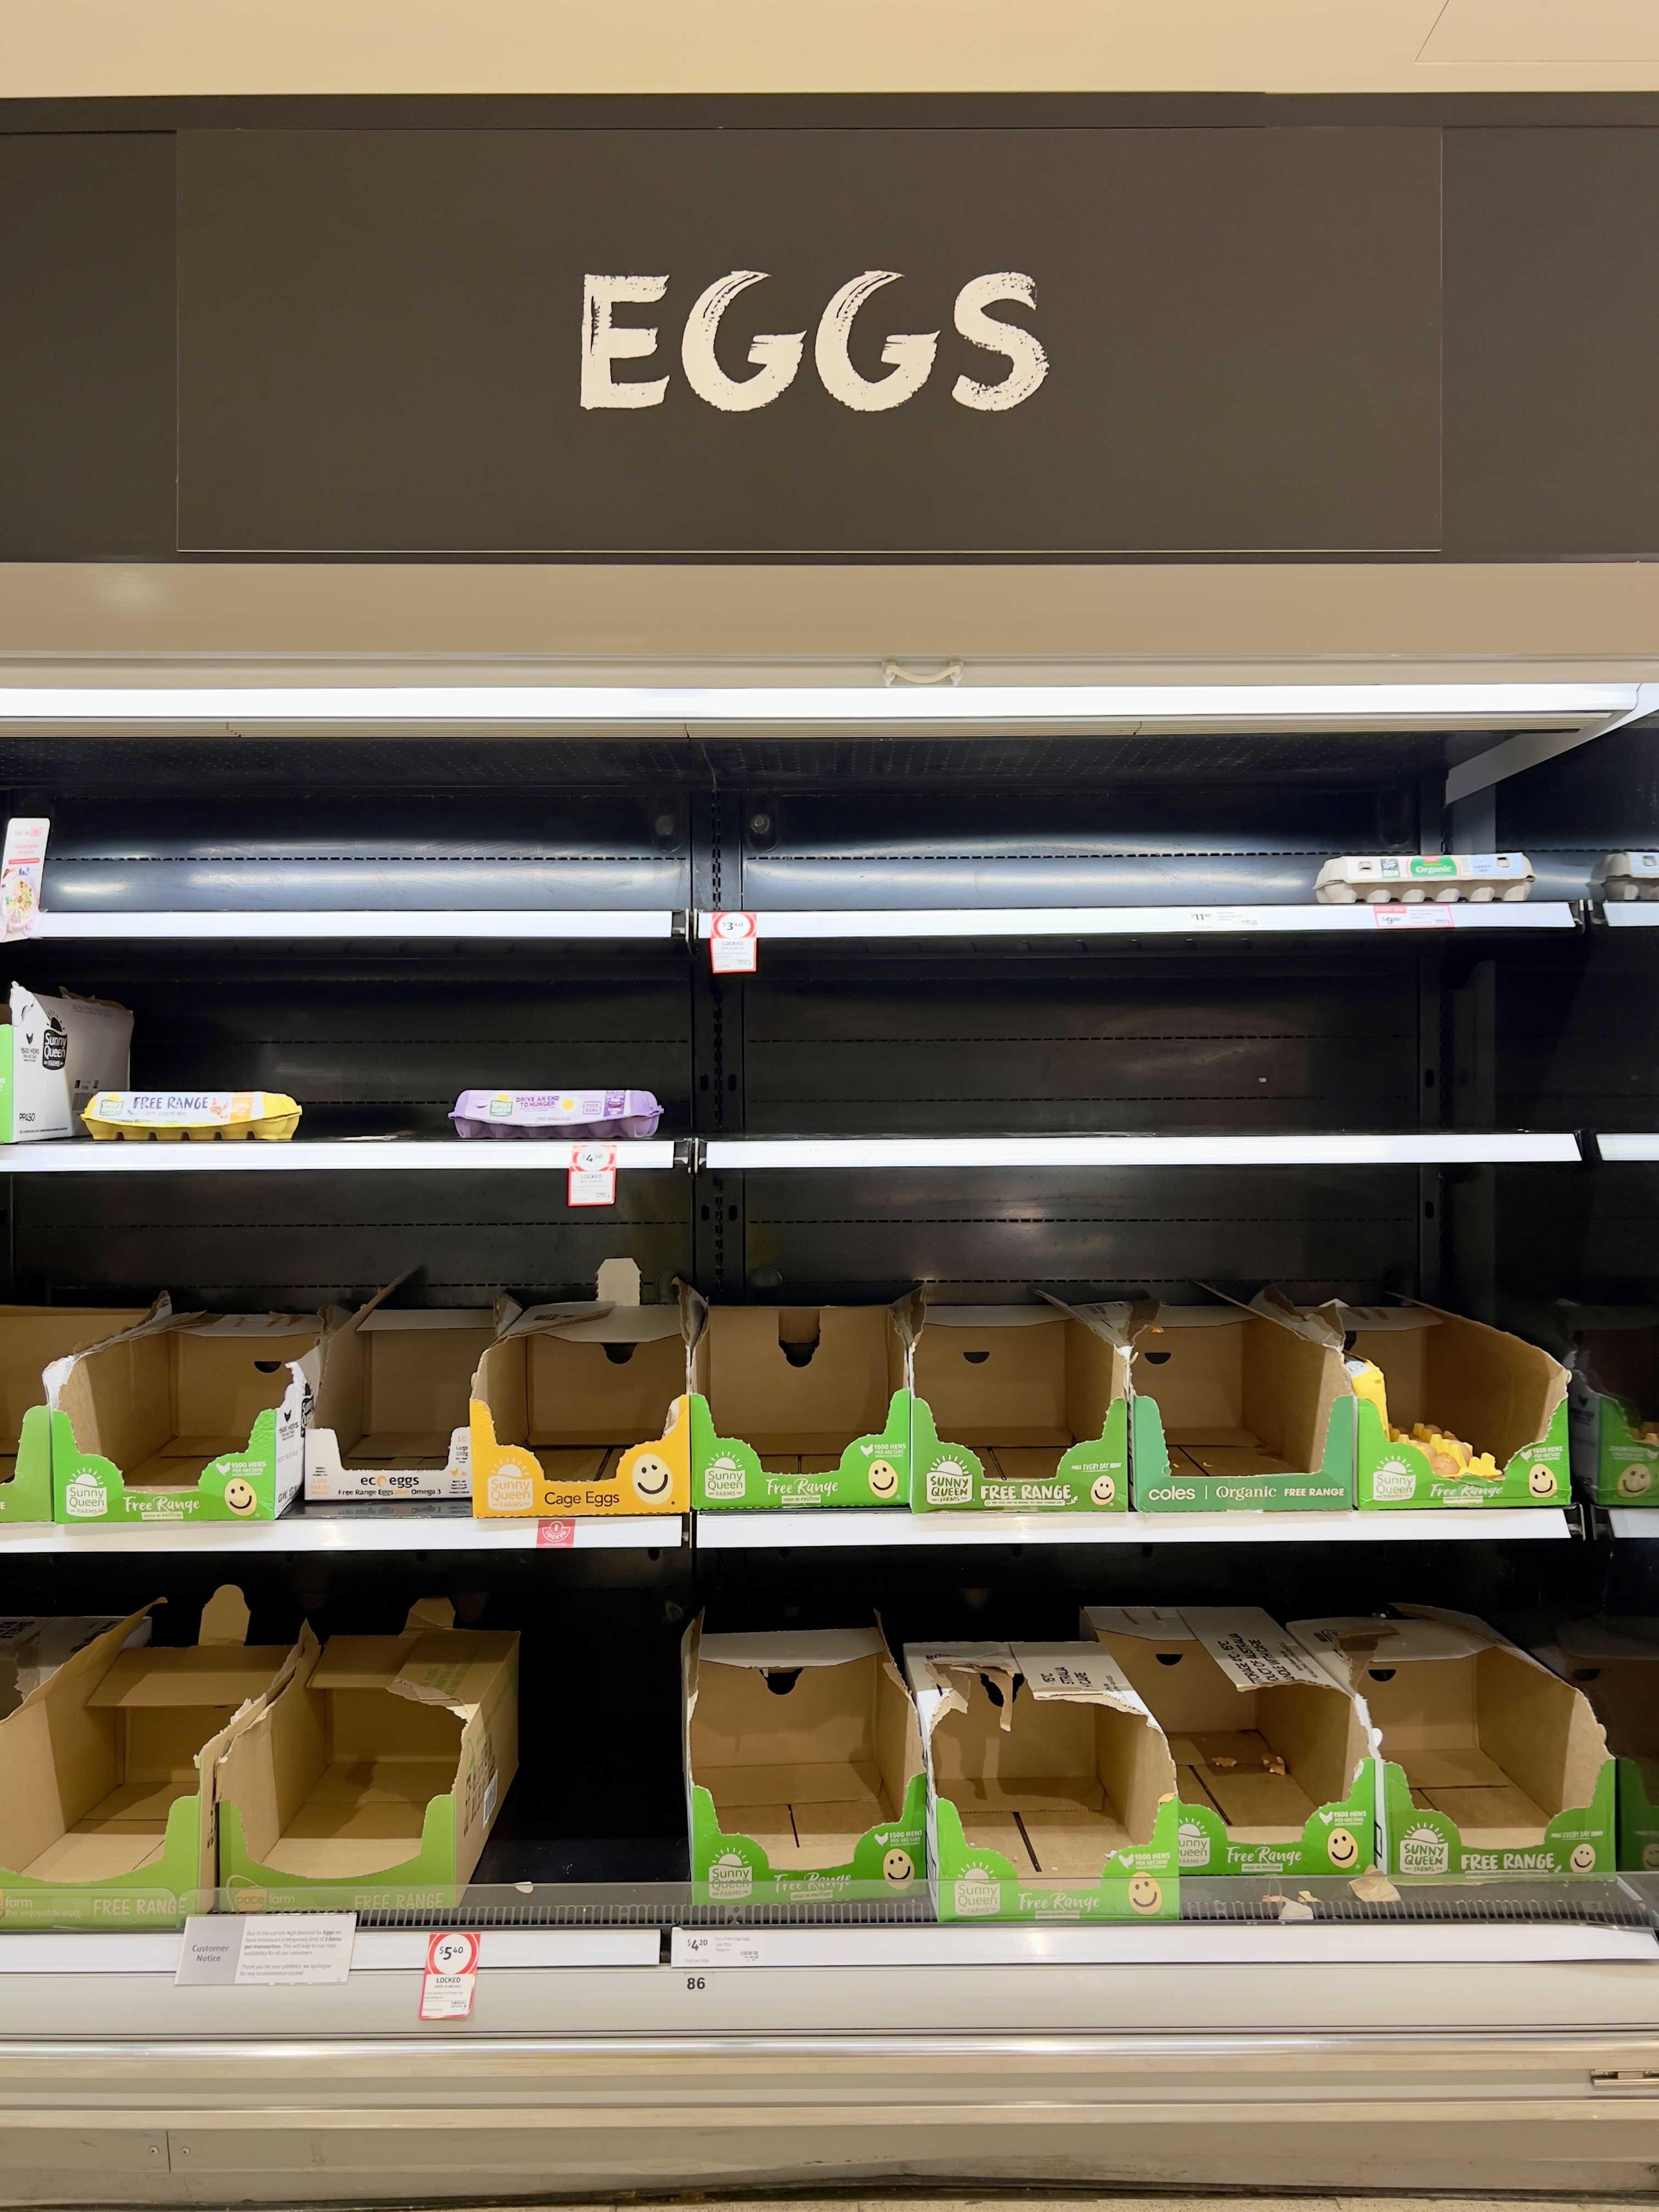 Crisi delle uova in Uk, cosa c'è dietro, e per quanto durerà?